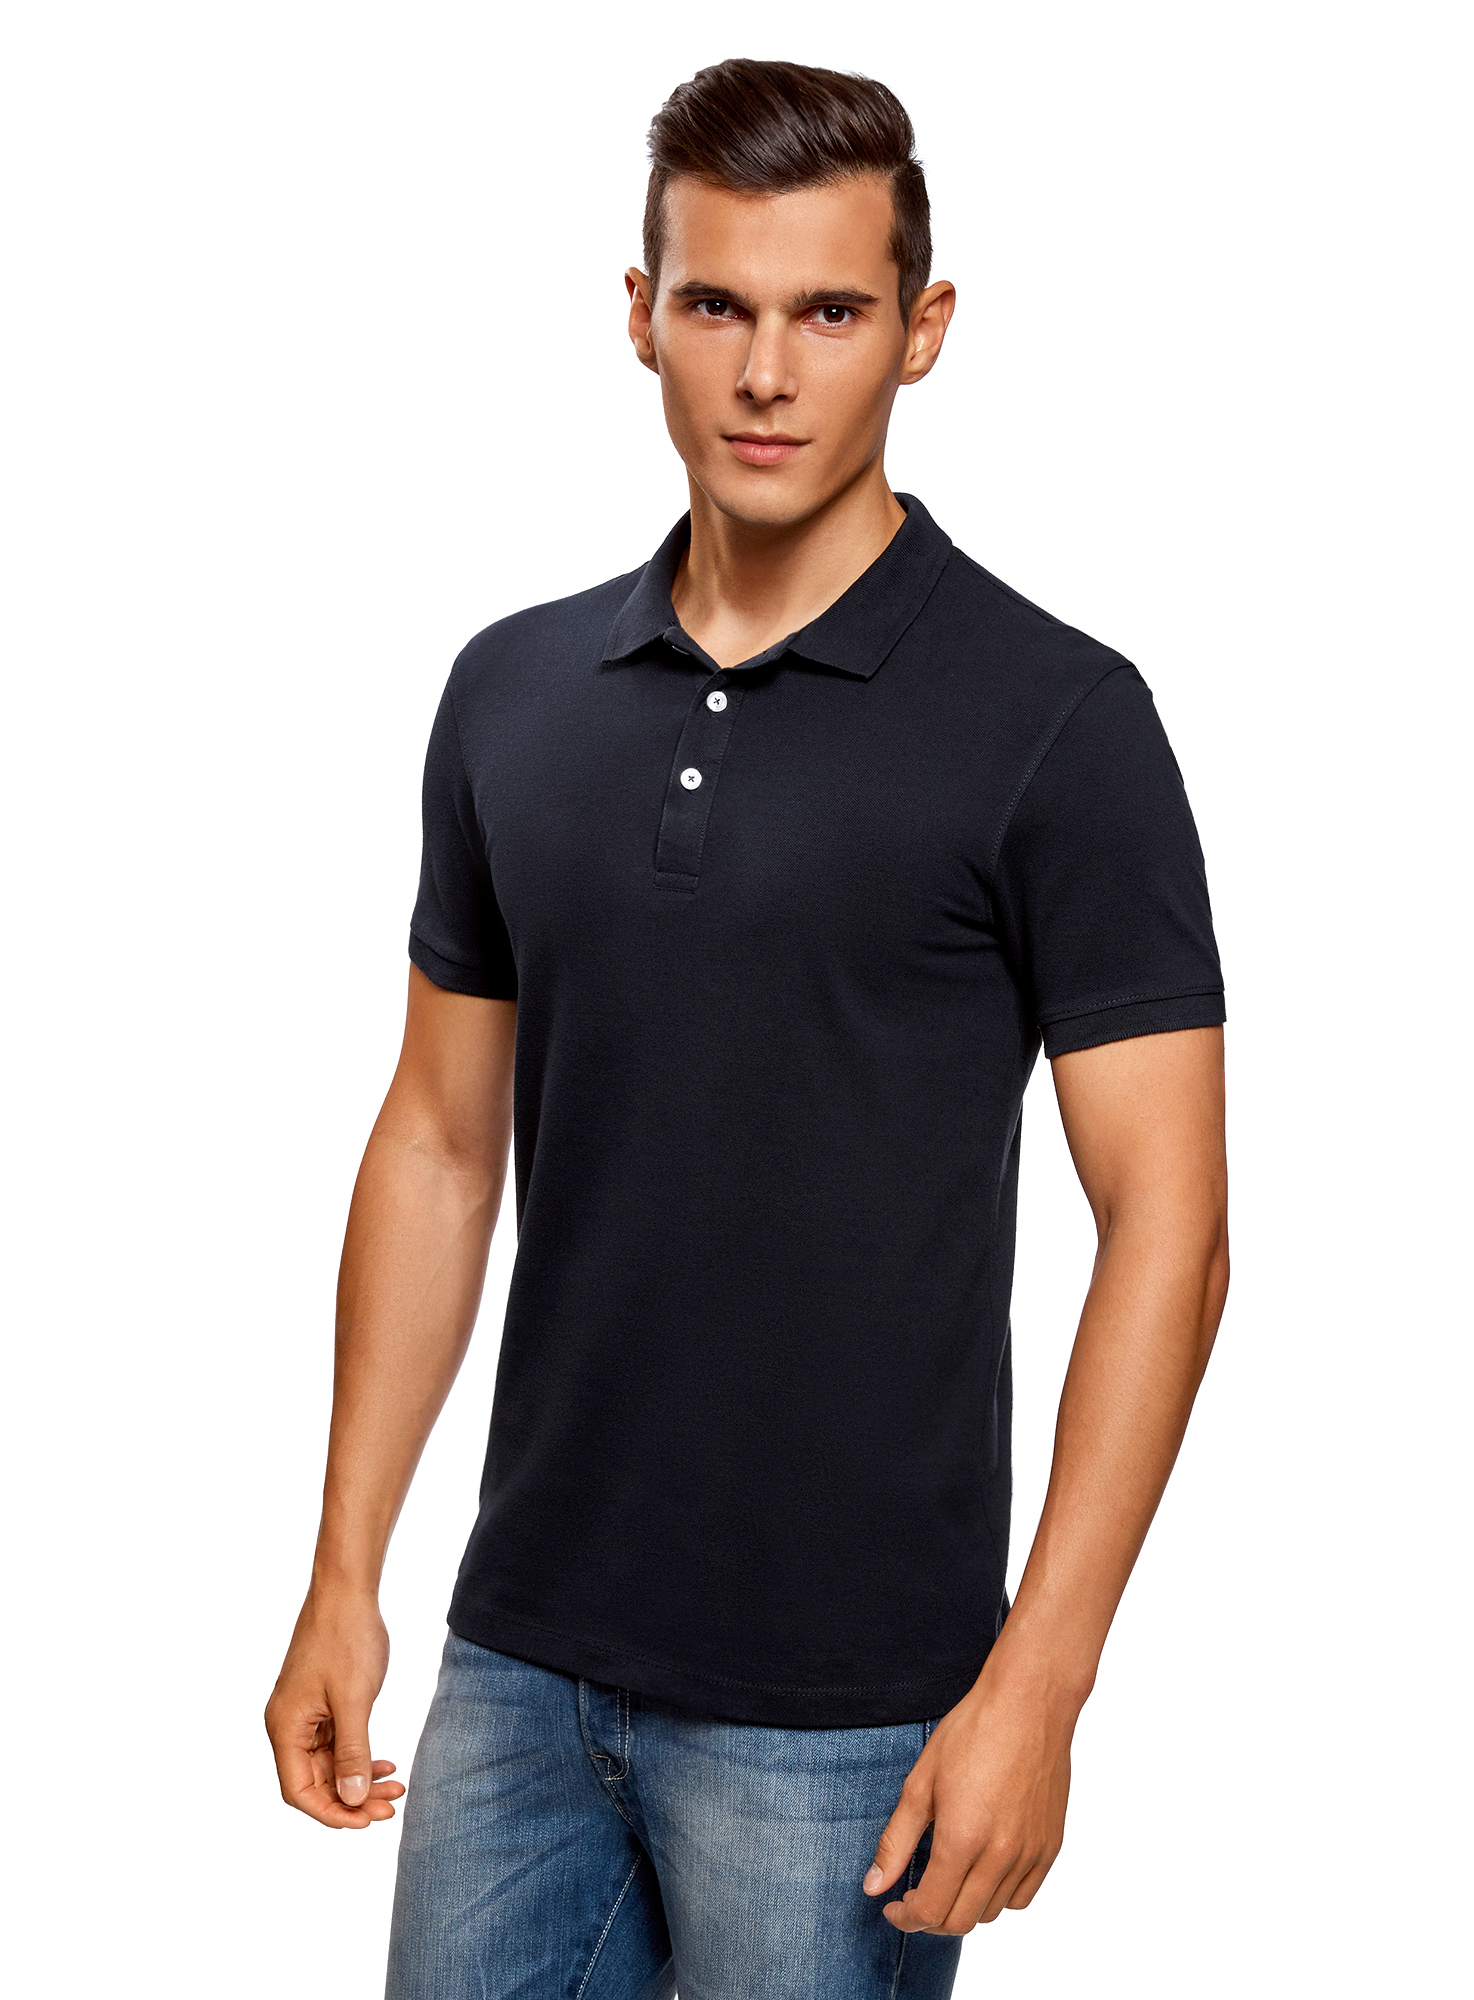 Комплект футболок-поло мужских oodji 5B422001T2 синих XS